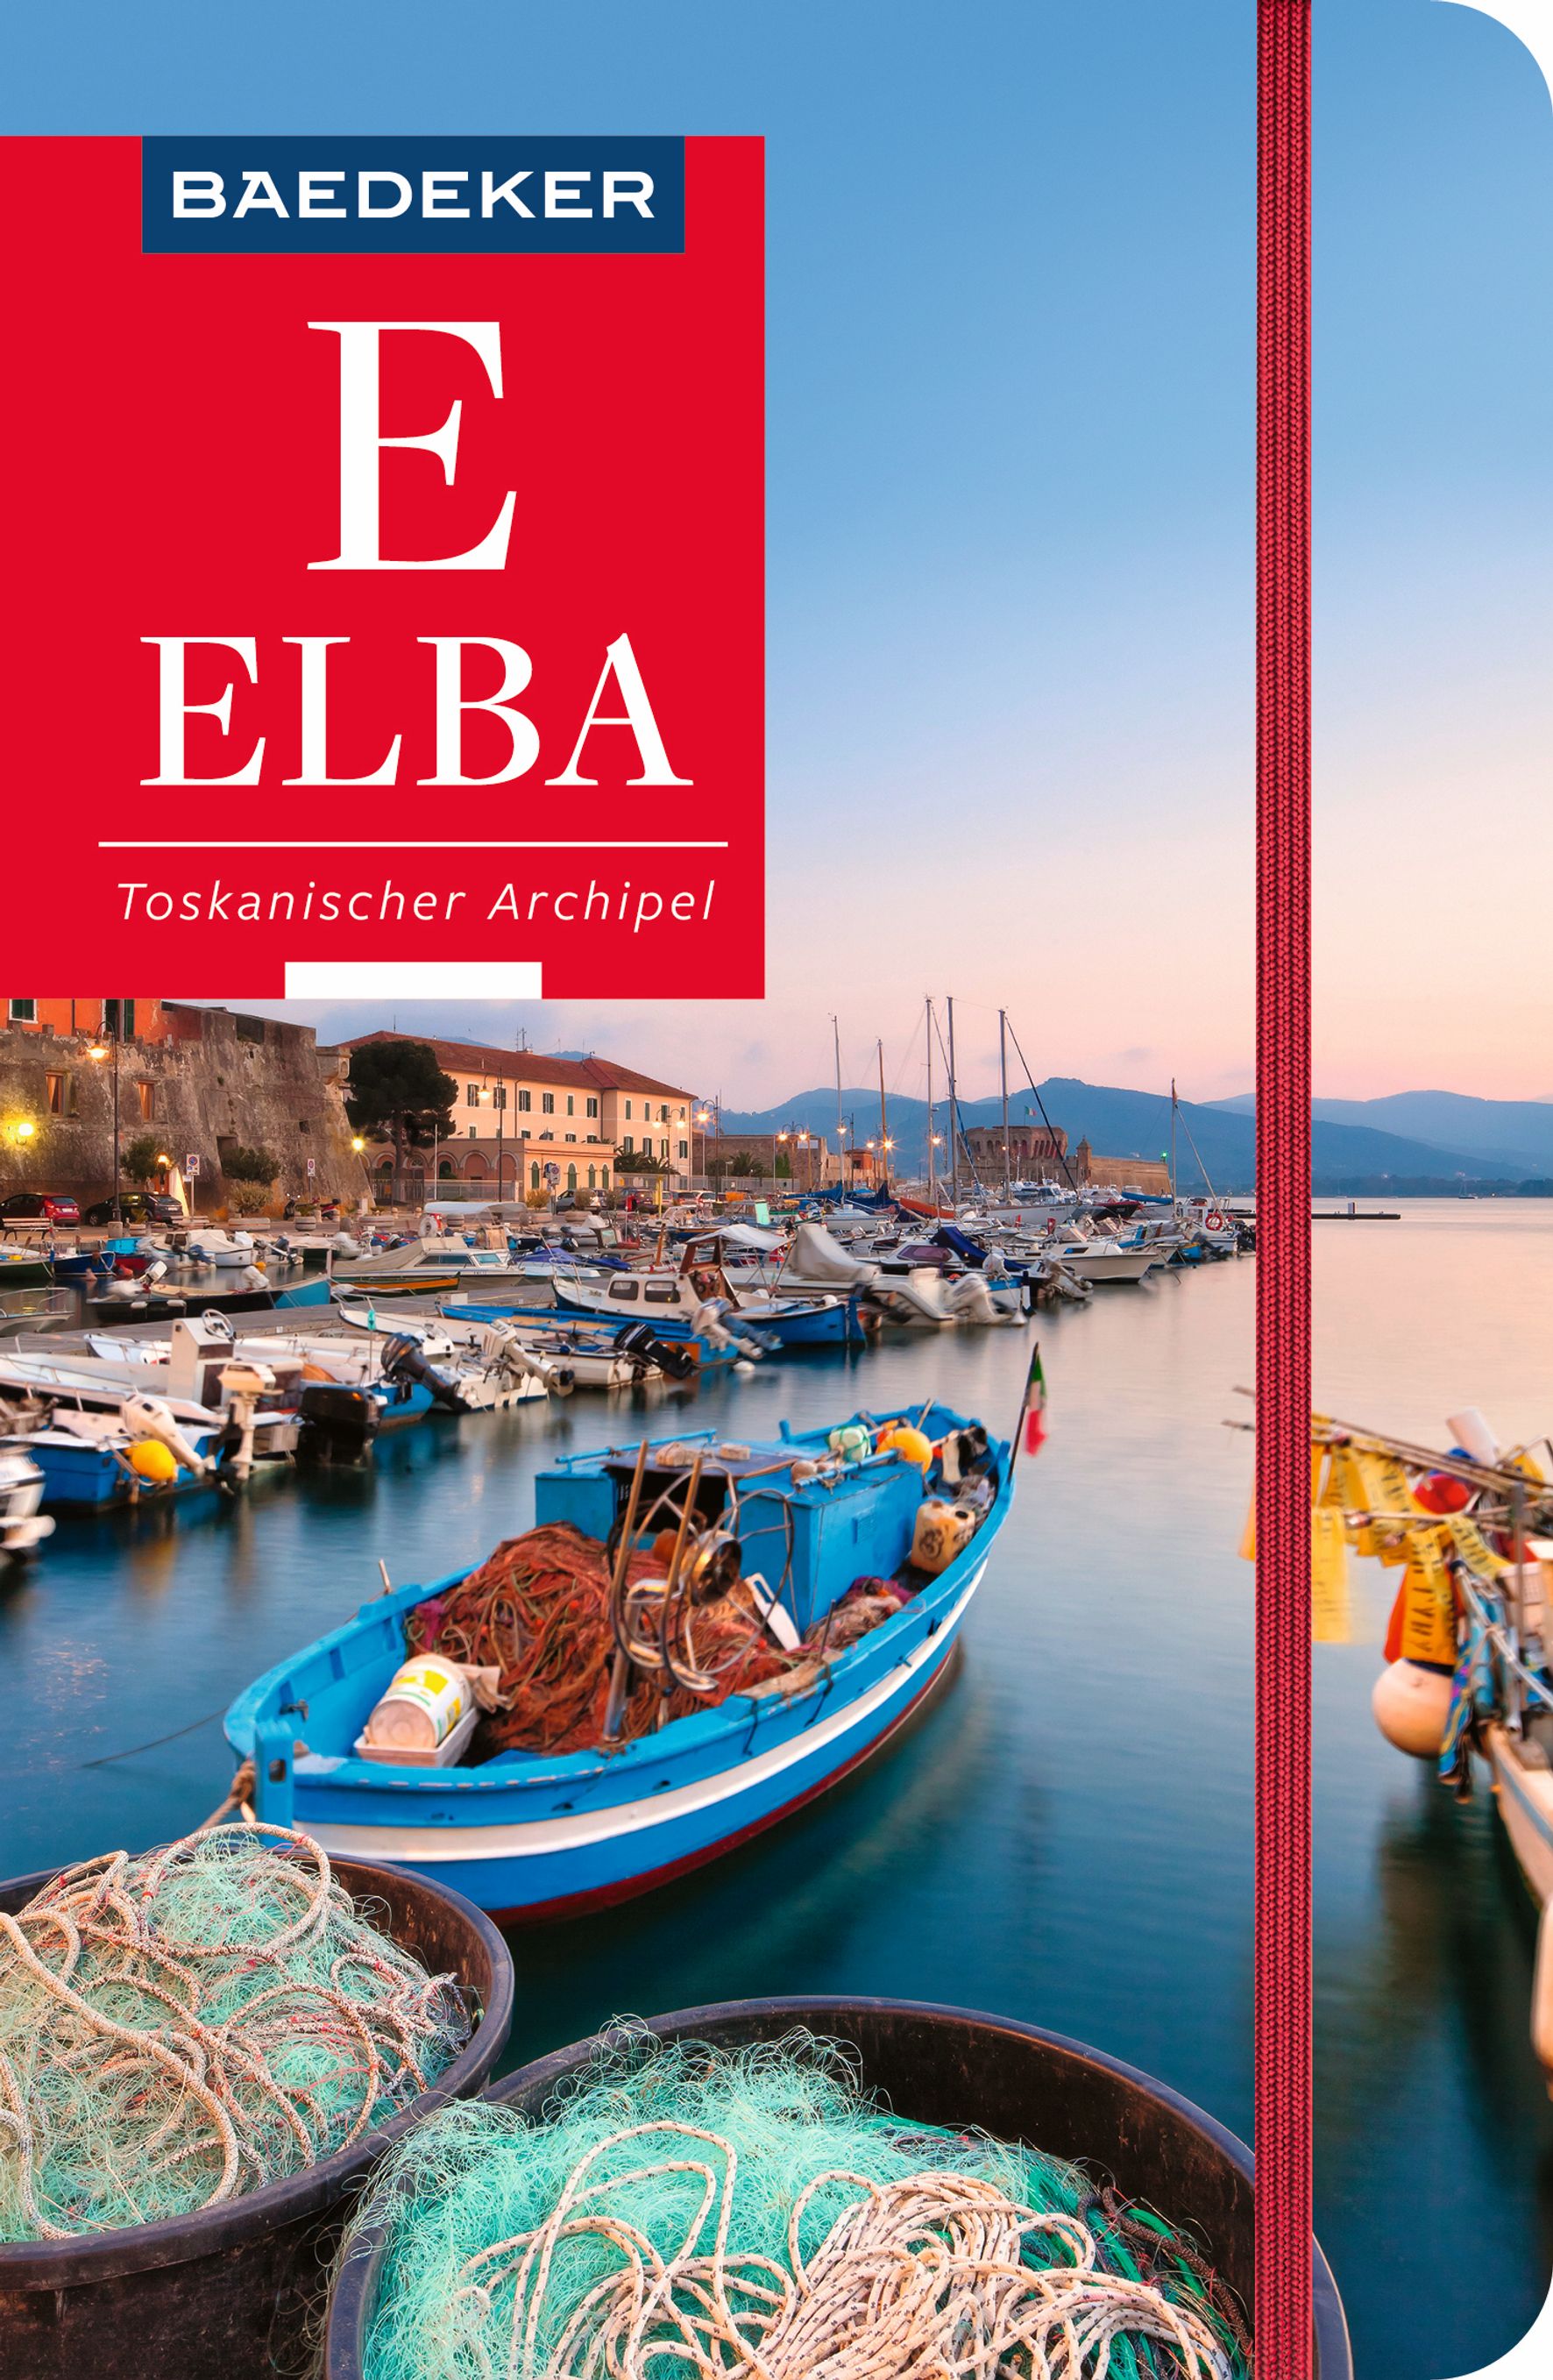 Baedeker Elba, Toskanischer Archipel